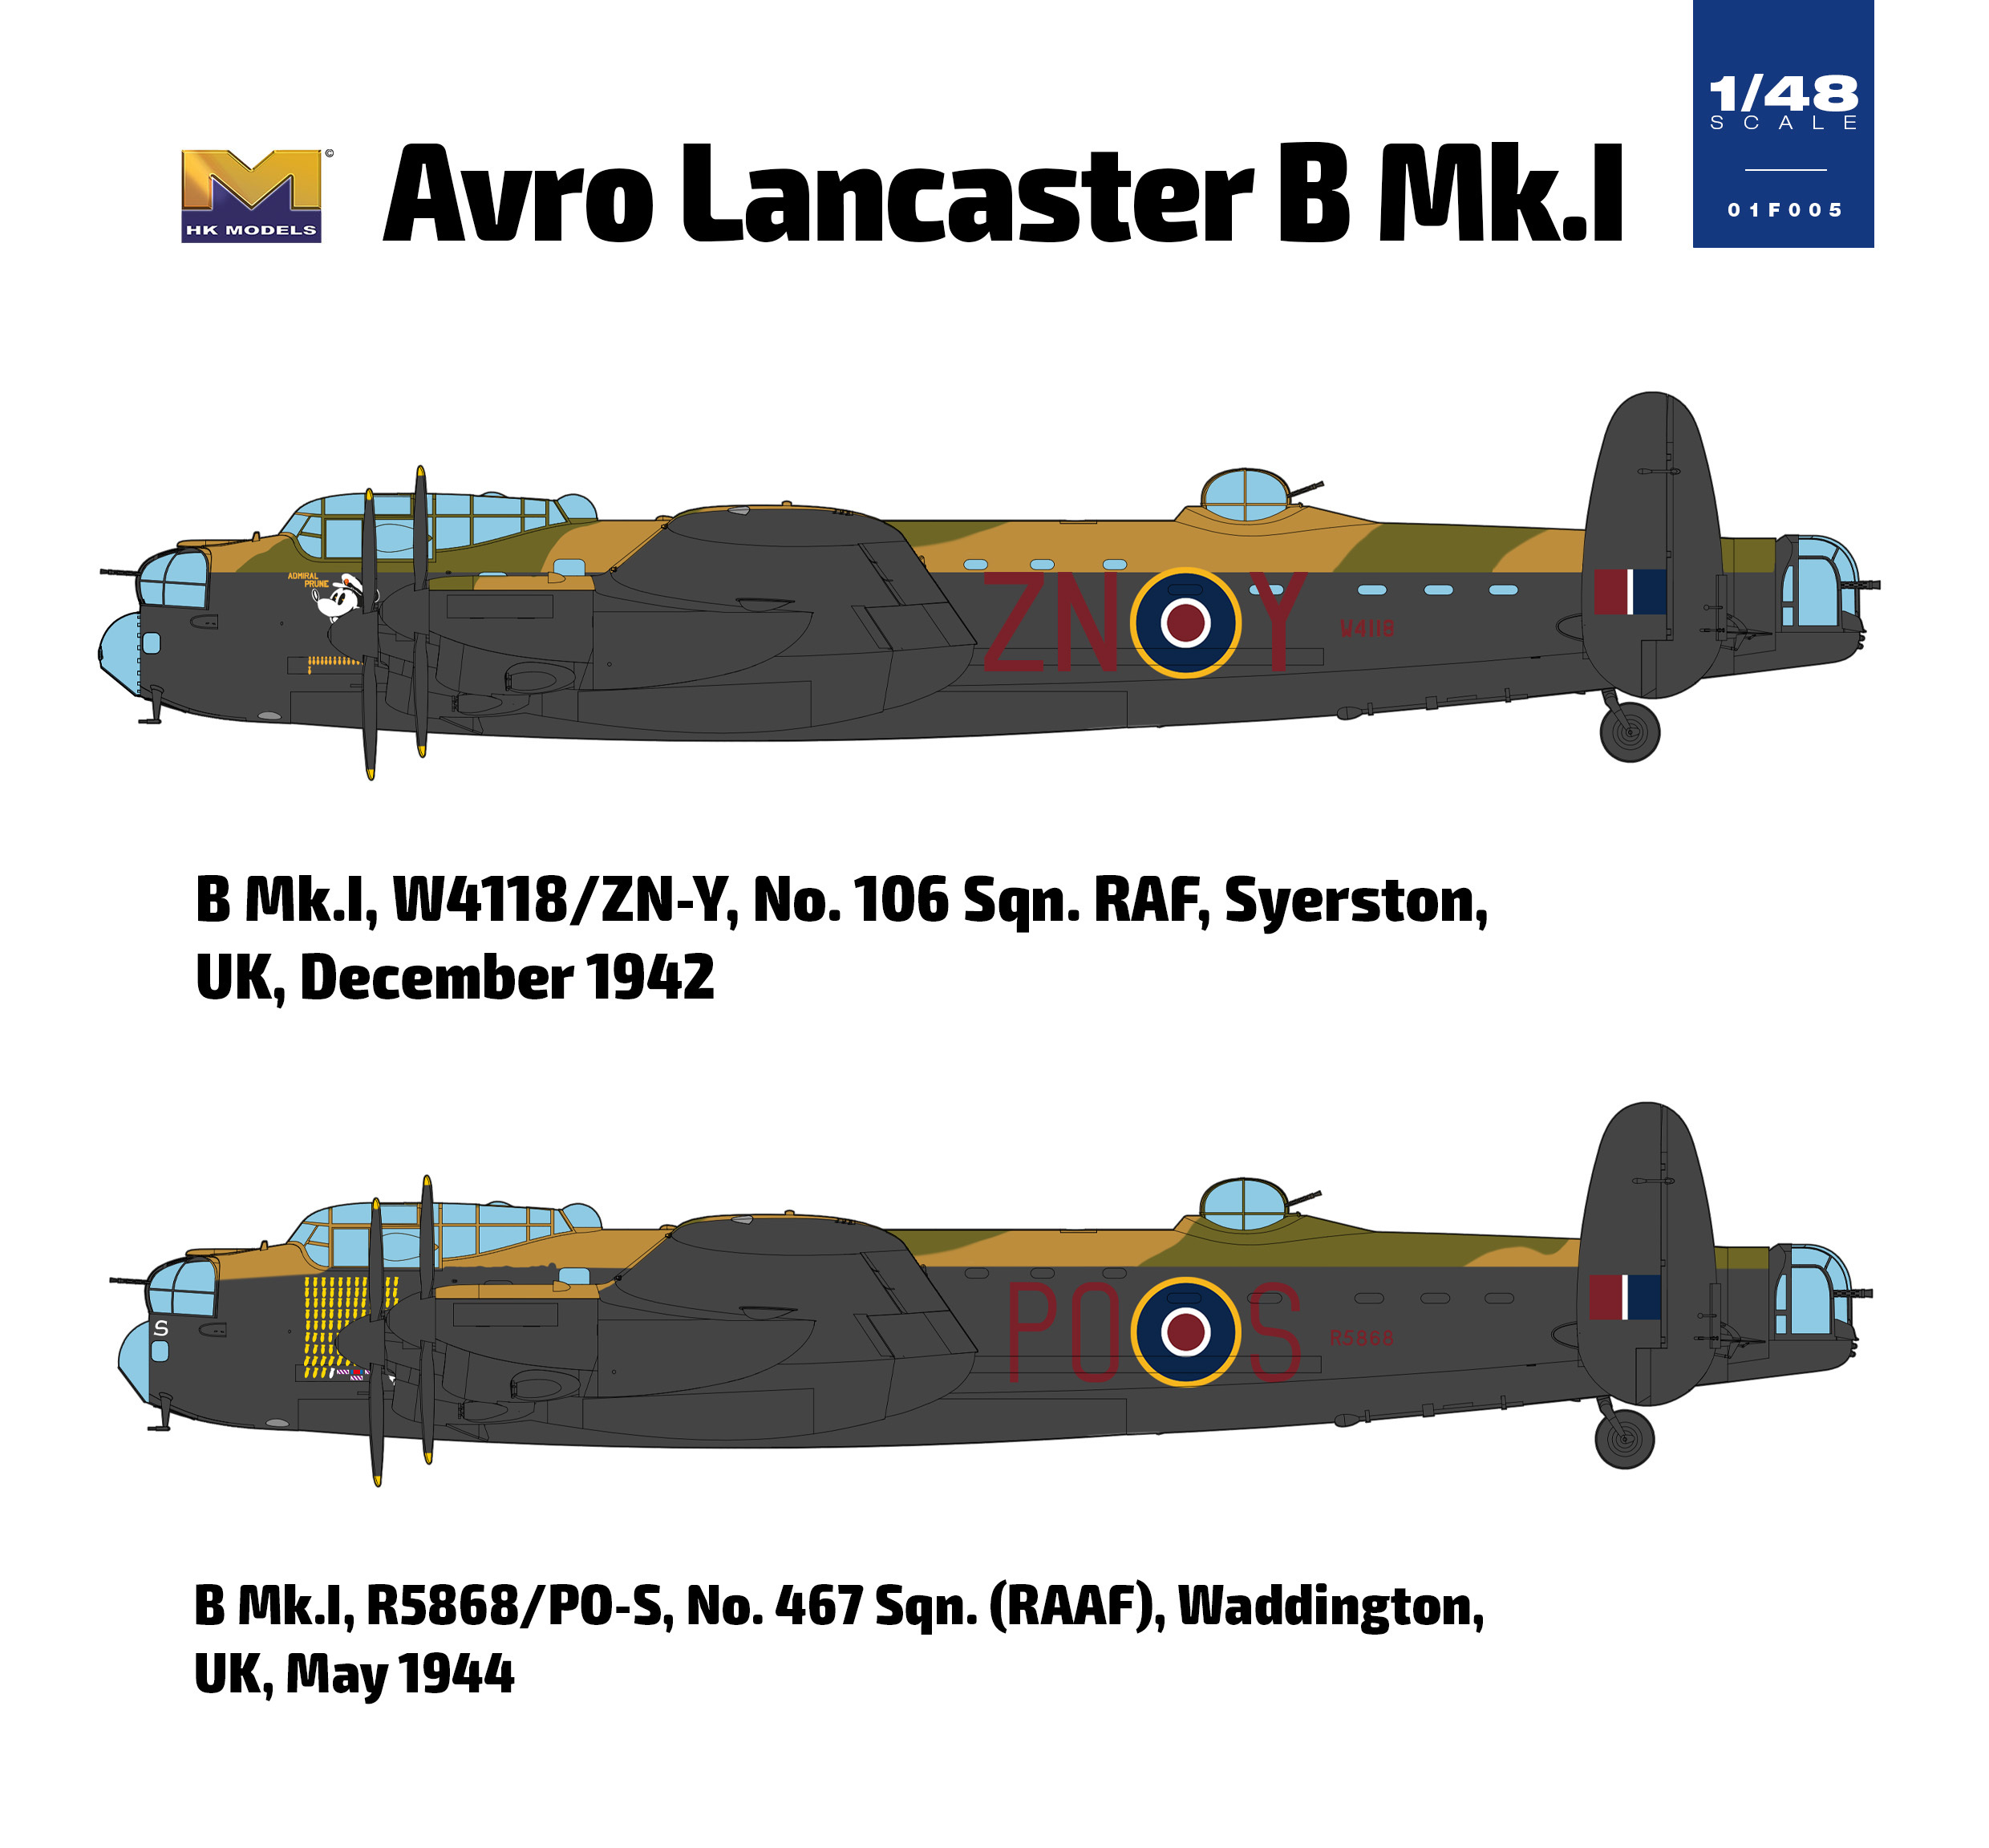 Hong Kong Models 01f005 1:48 Avro Lancaster B Mk I Aircraft Model Kit